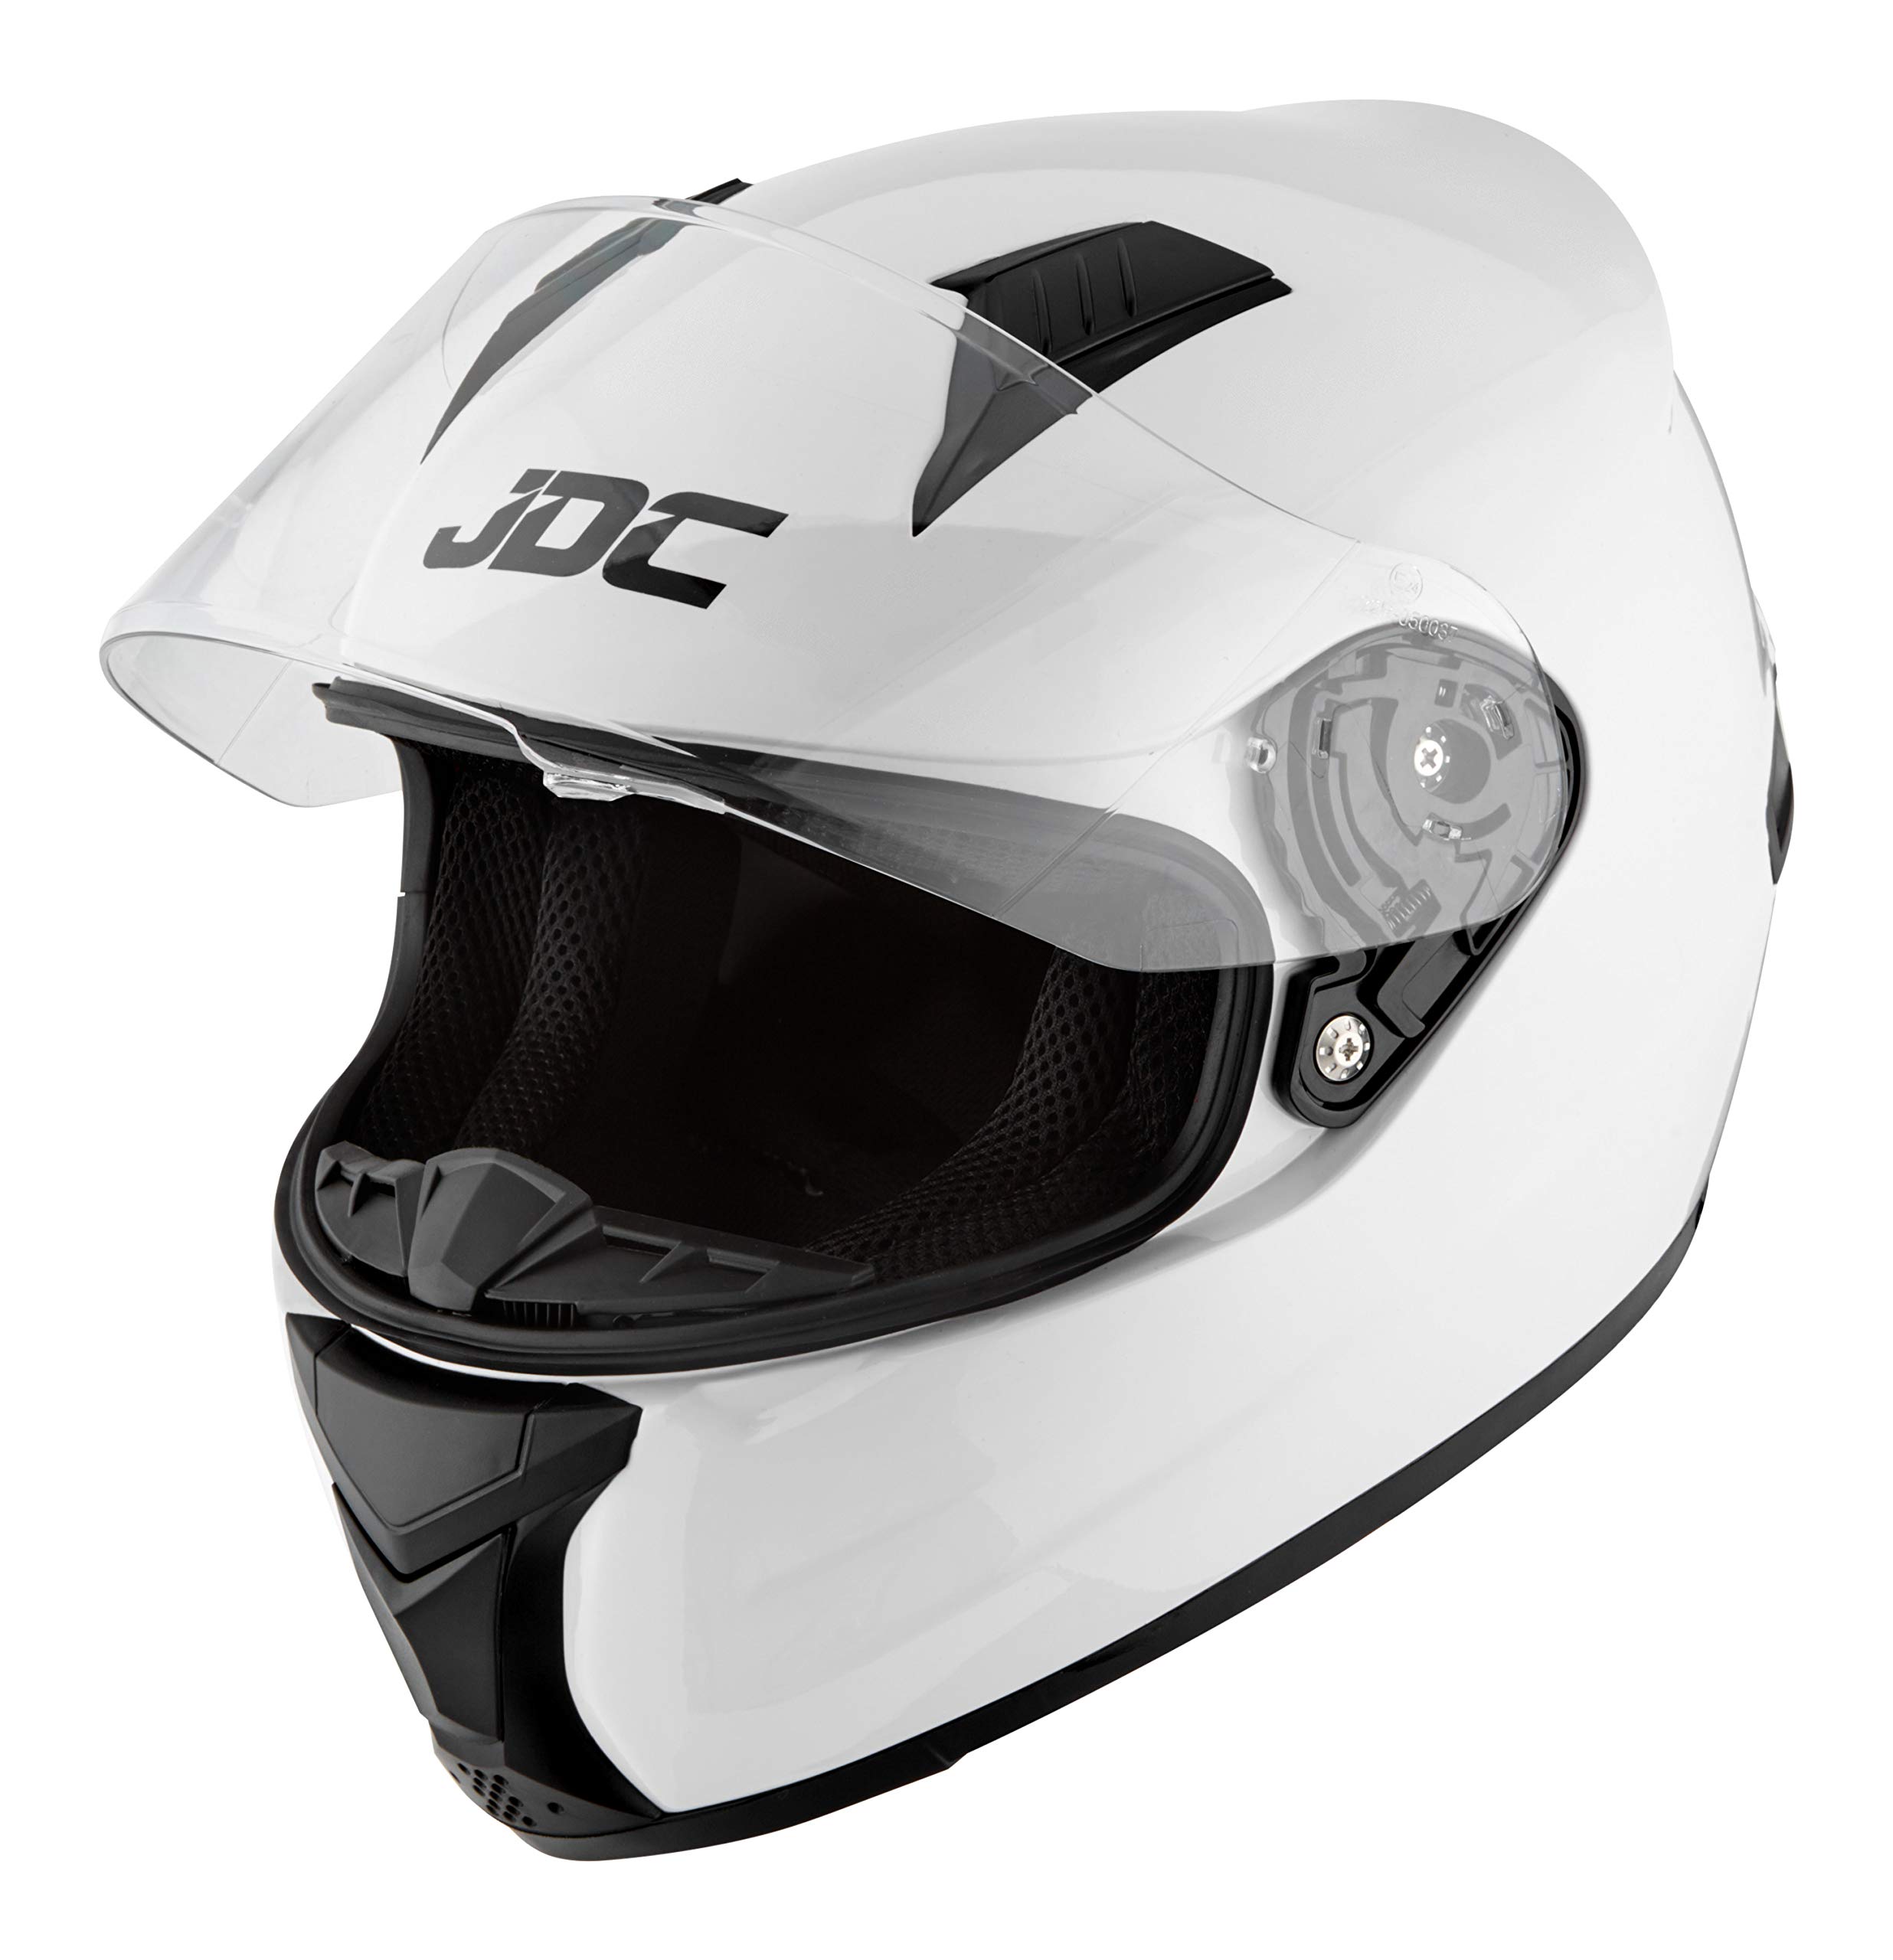 JDC volles Gesicht Motorrad Helm - Prism - Weiß - M